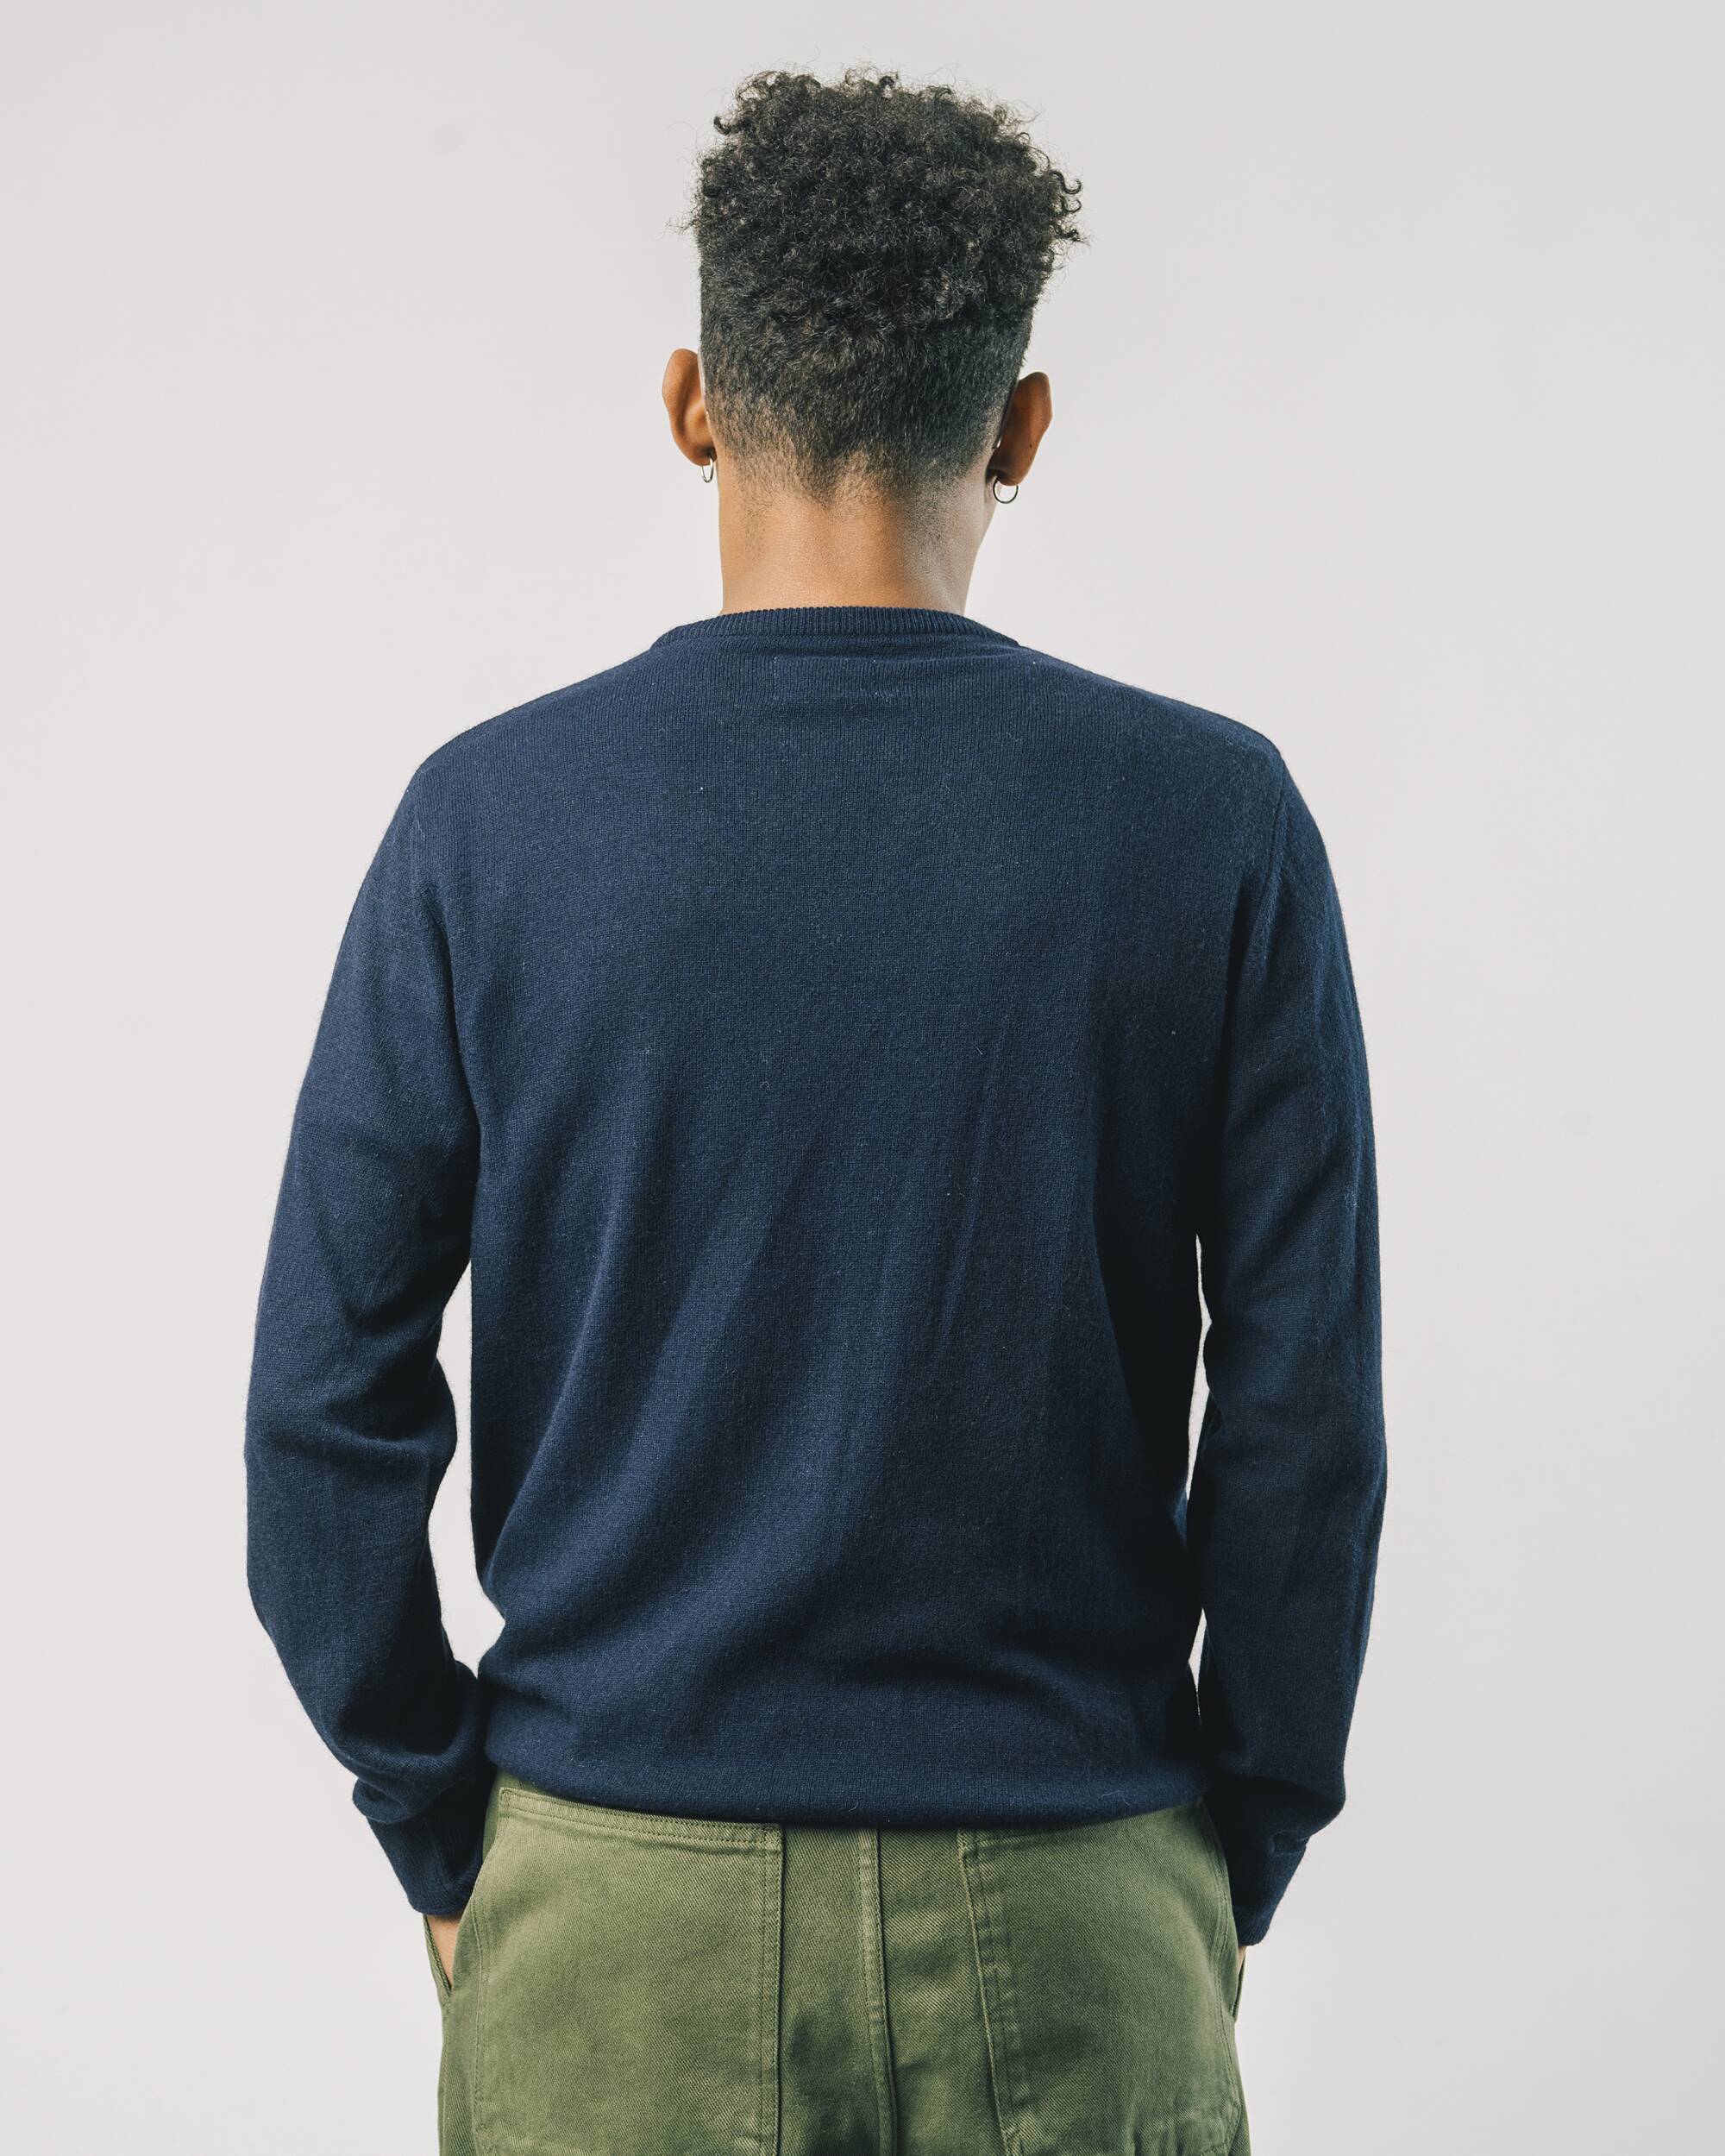 Sweatshirt "Twins" in navy - blau aus 100% recyceltem Material von Brava Fabrics